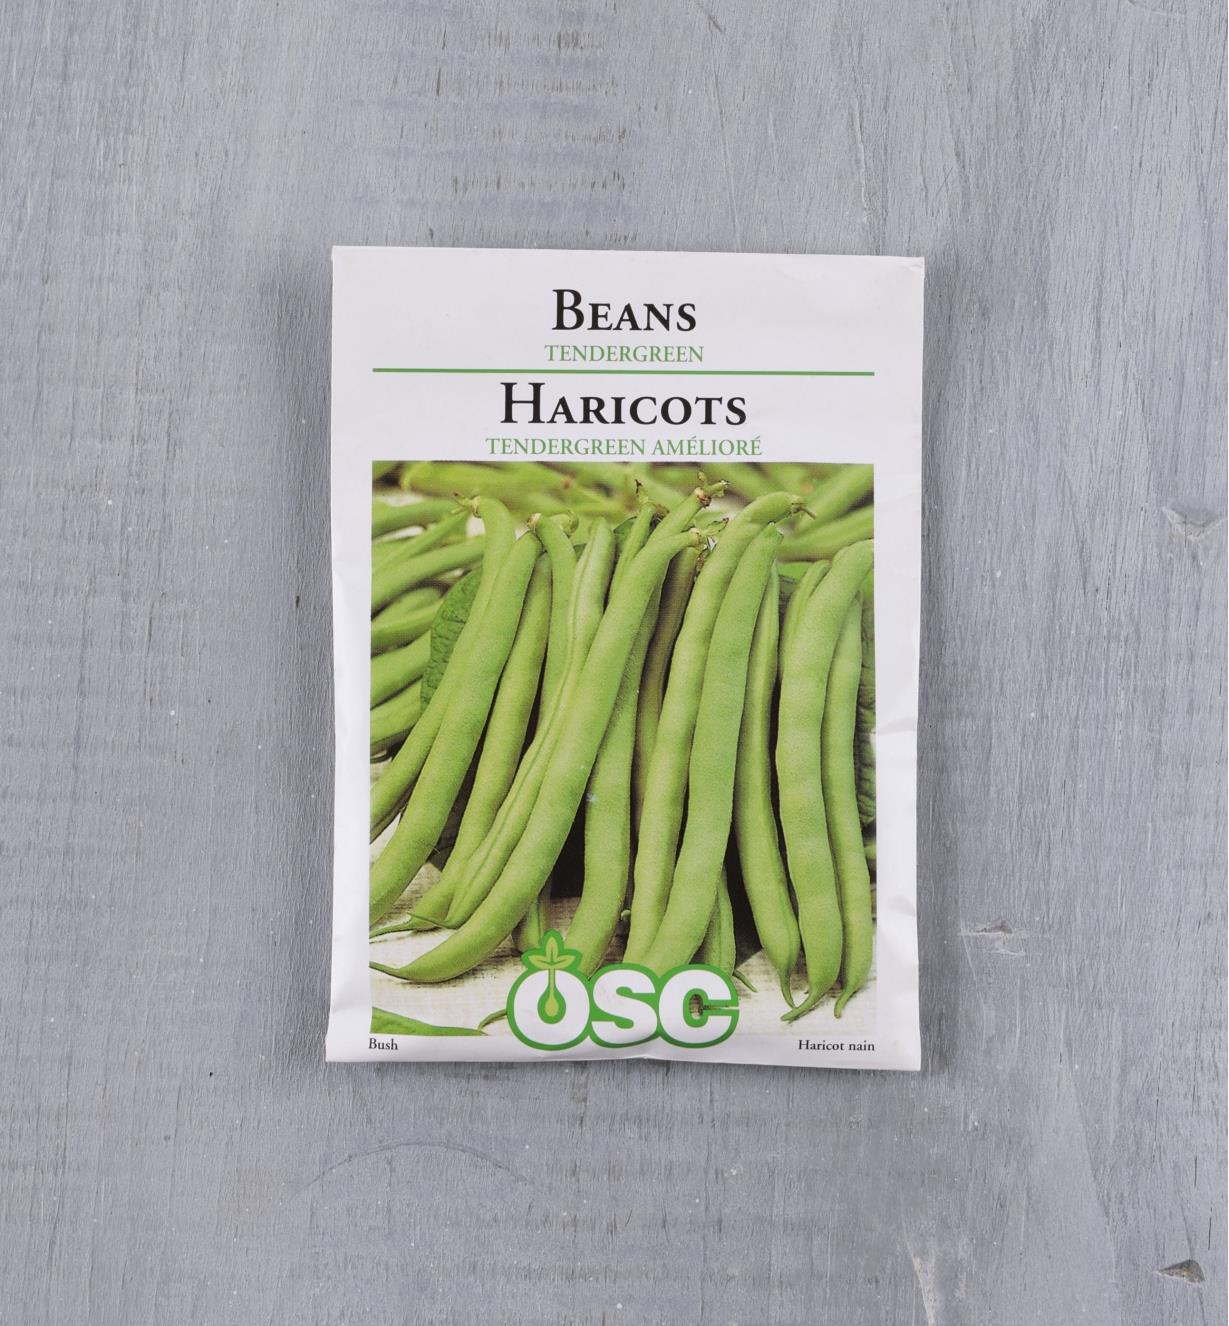 SD106 - Bush Beans, Tendergreen